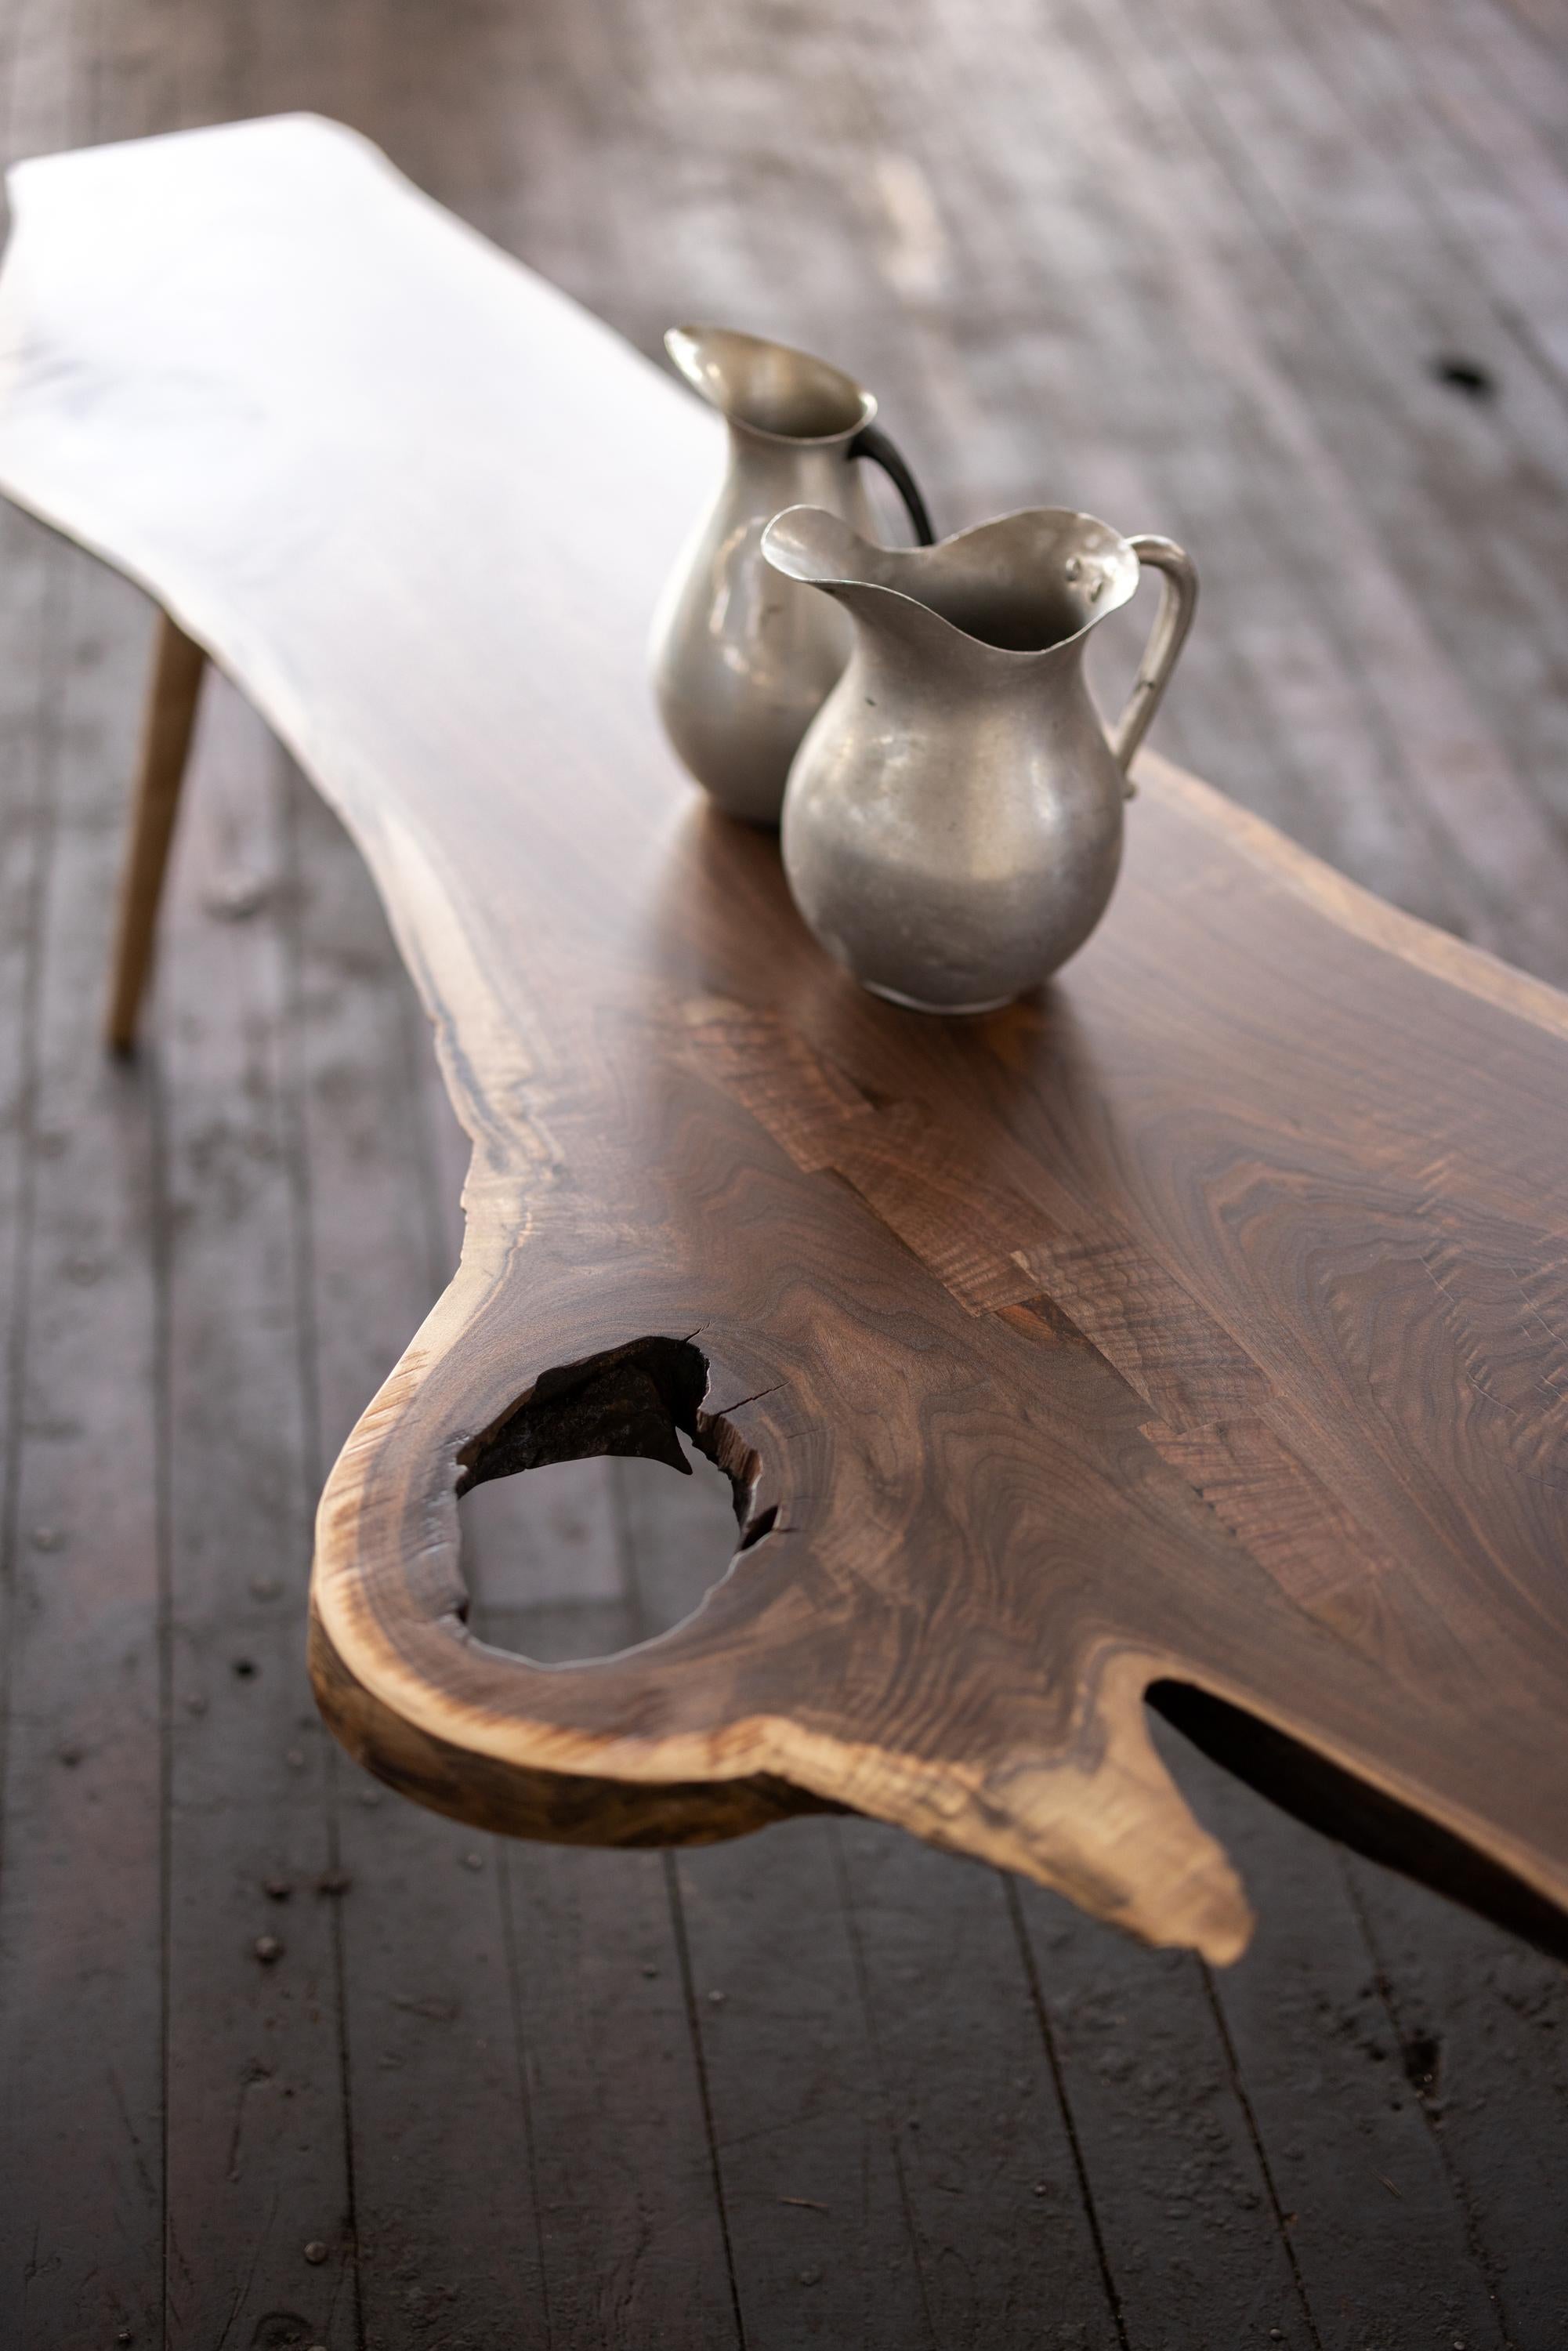 Tische aus Live Edge-Nussbaumplatten haben eine einzigartige und natürliche Ästhetik, die sie zum Mittelpunkt eines Wohnzimmers machen können. Die schlanken Ahornbeine sind auf der Drehbank handgedreht. Benannt nach dem Fluss Cahaba, werden die